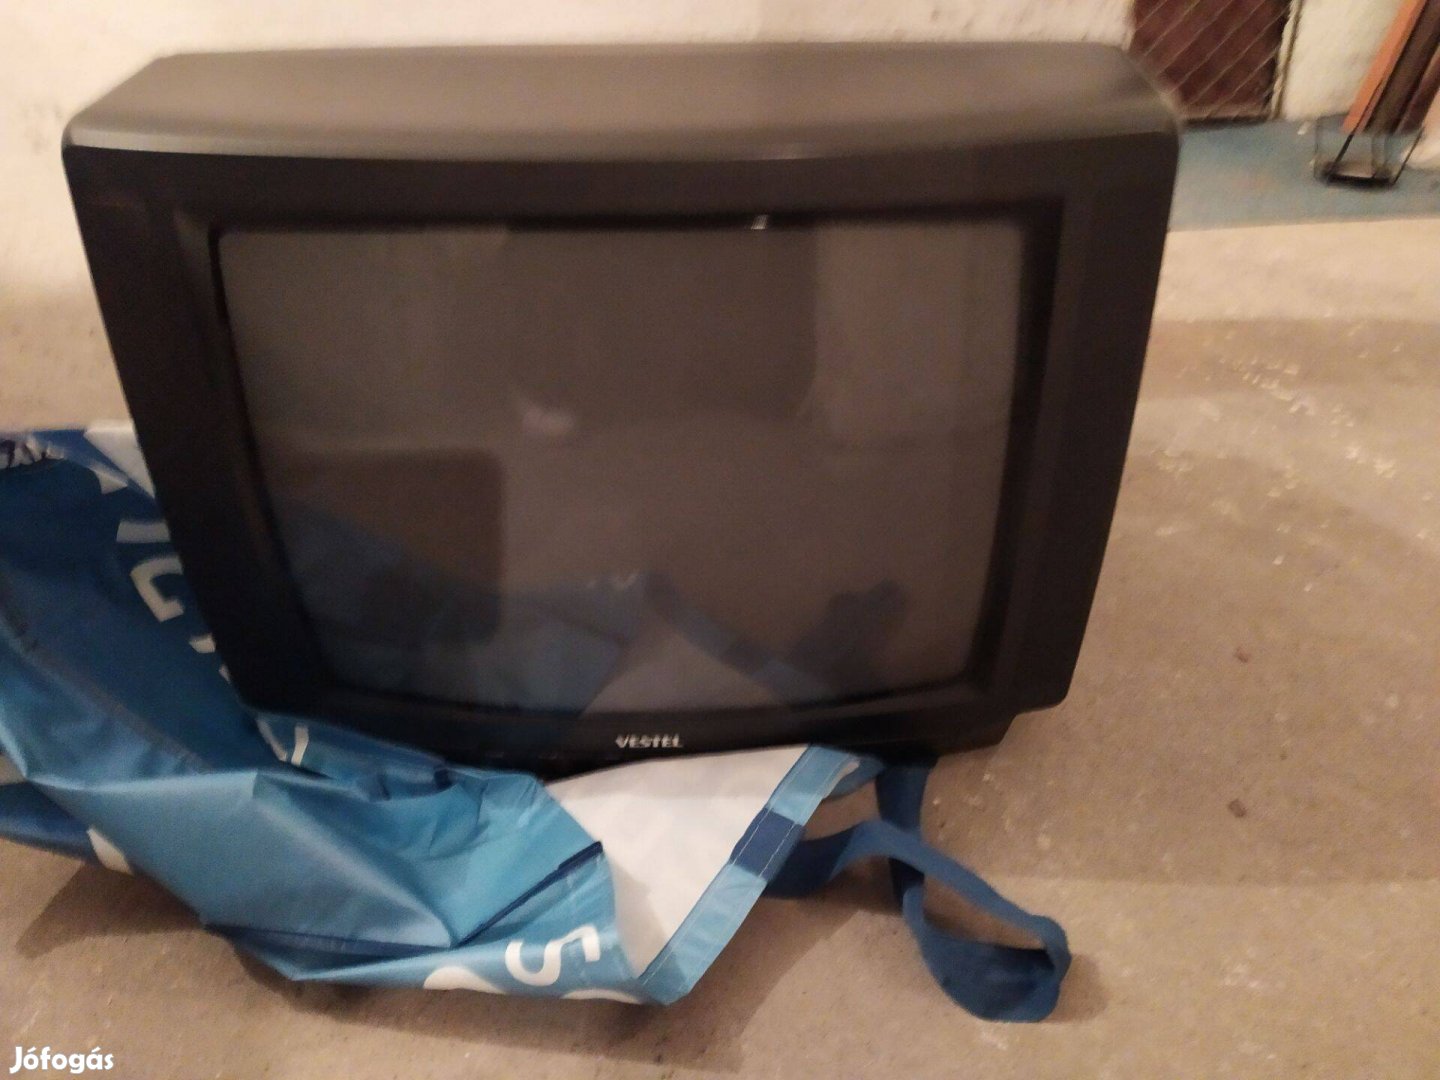 Zuglóból Ingyen elvihető régi típusú, működő TV, kb. 60 cm képátló